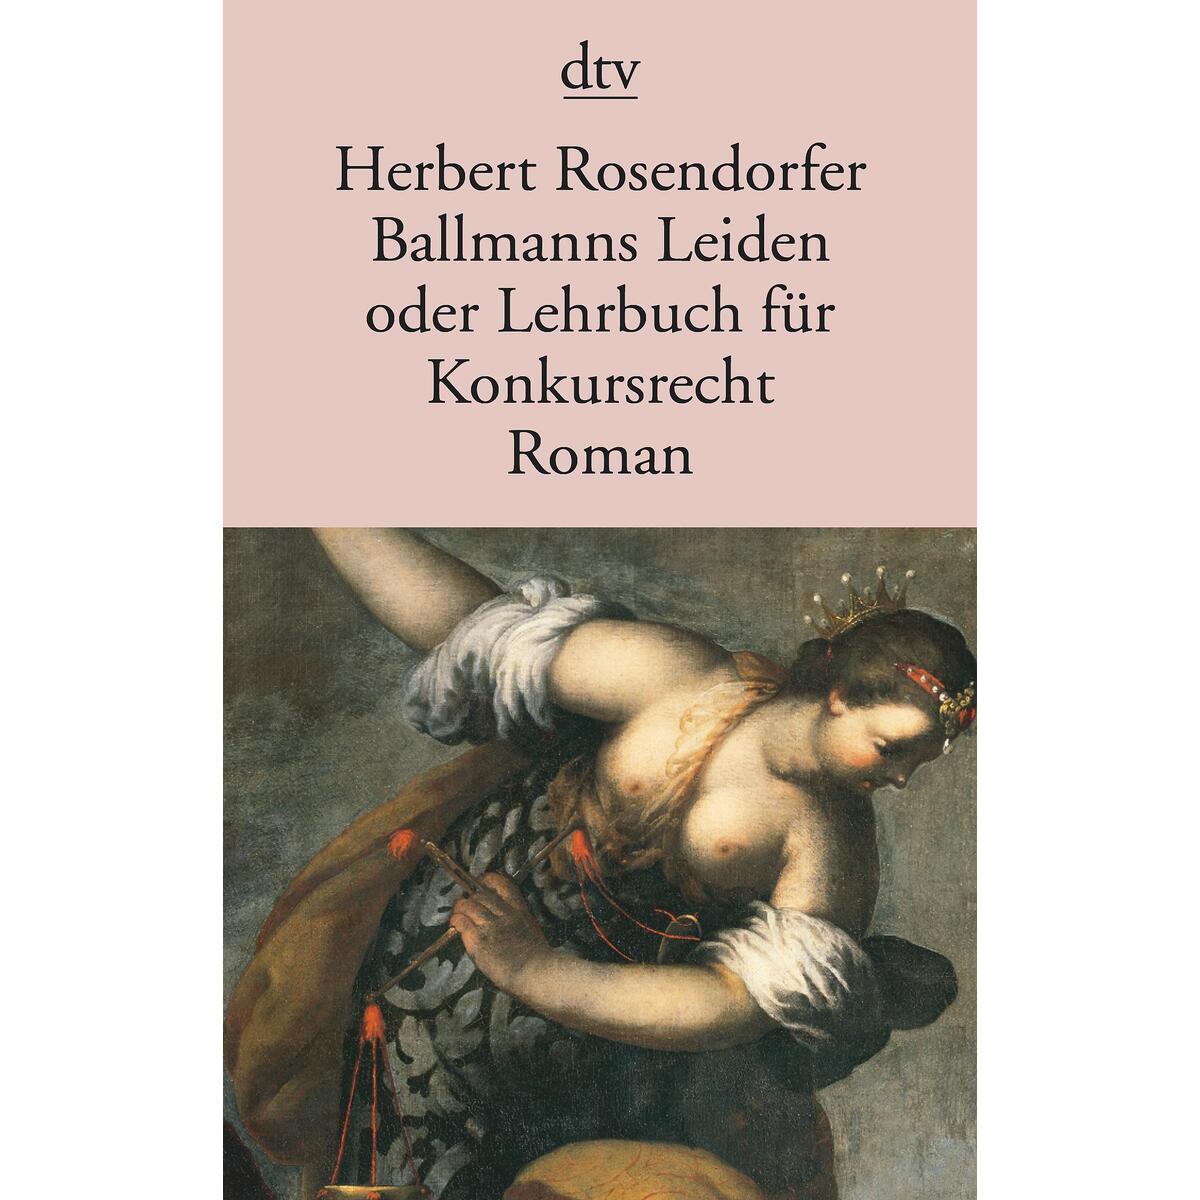 Ballmanns Leiden oder Lehrbuch für Konkursrecht von dtv Verlagsgesellschaft